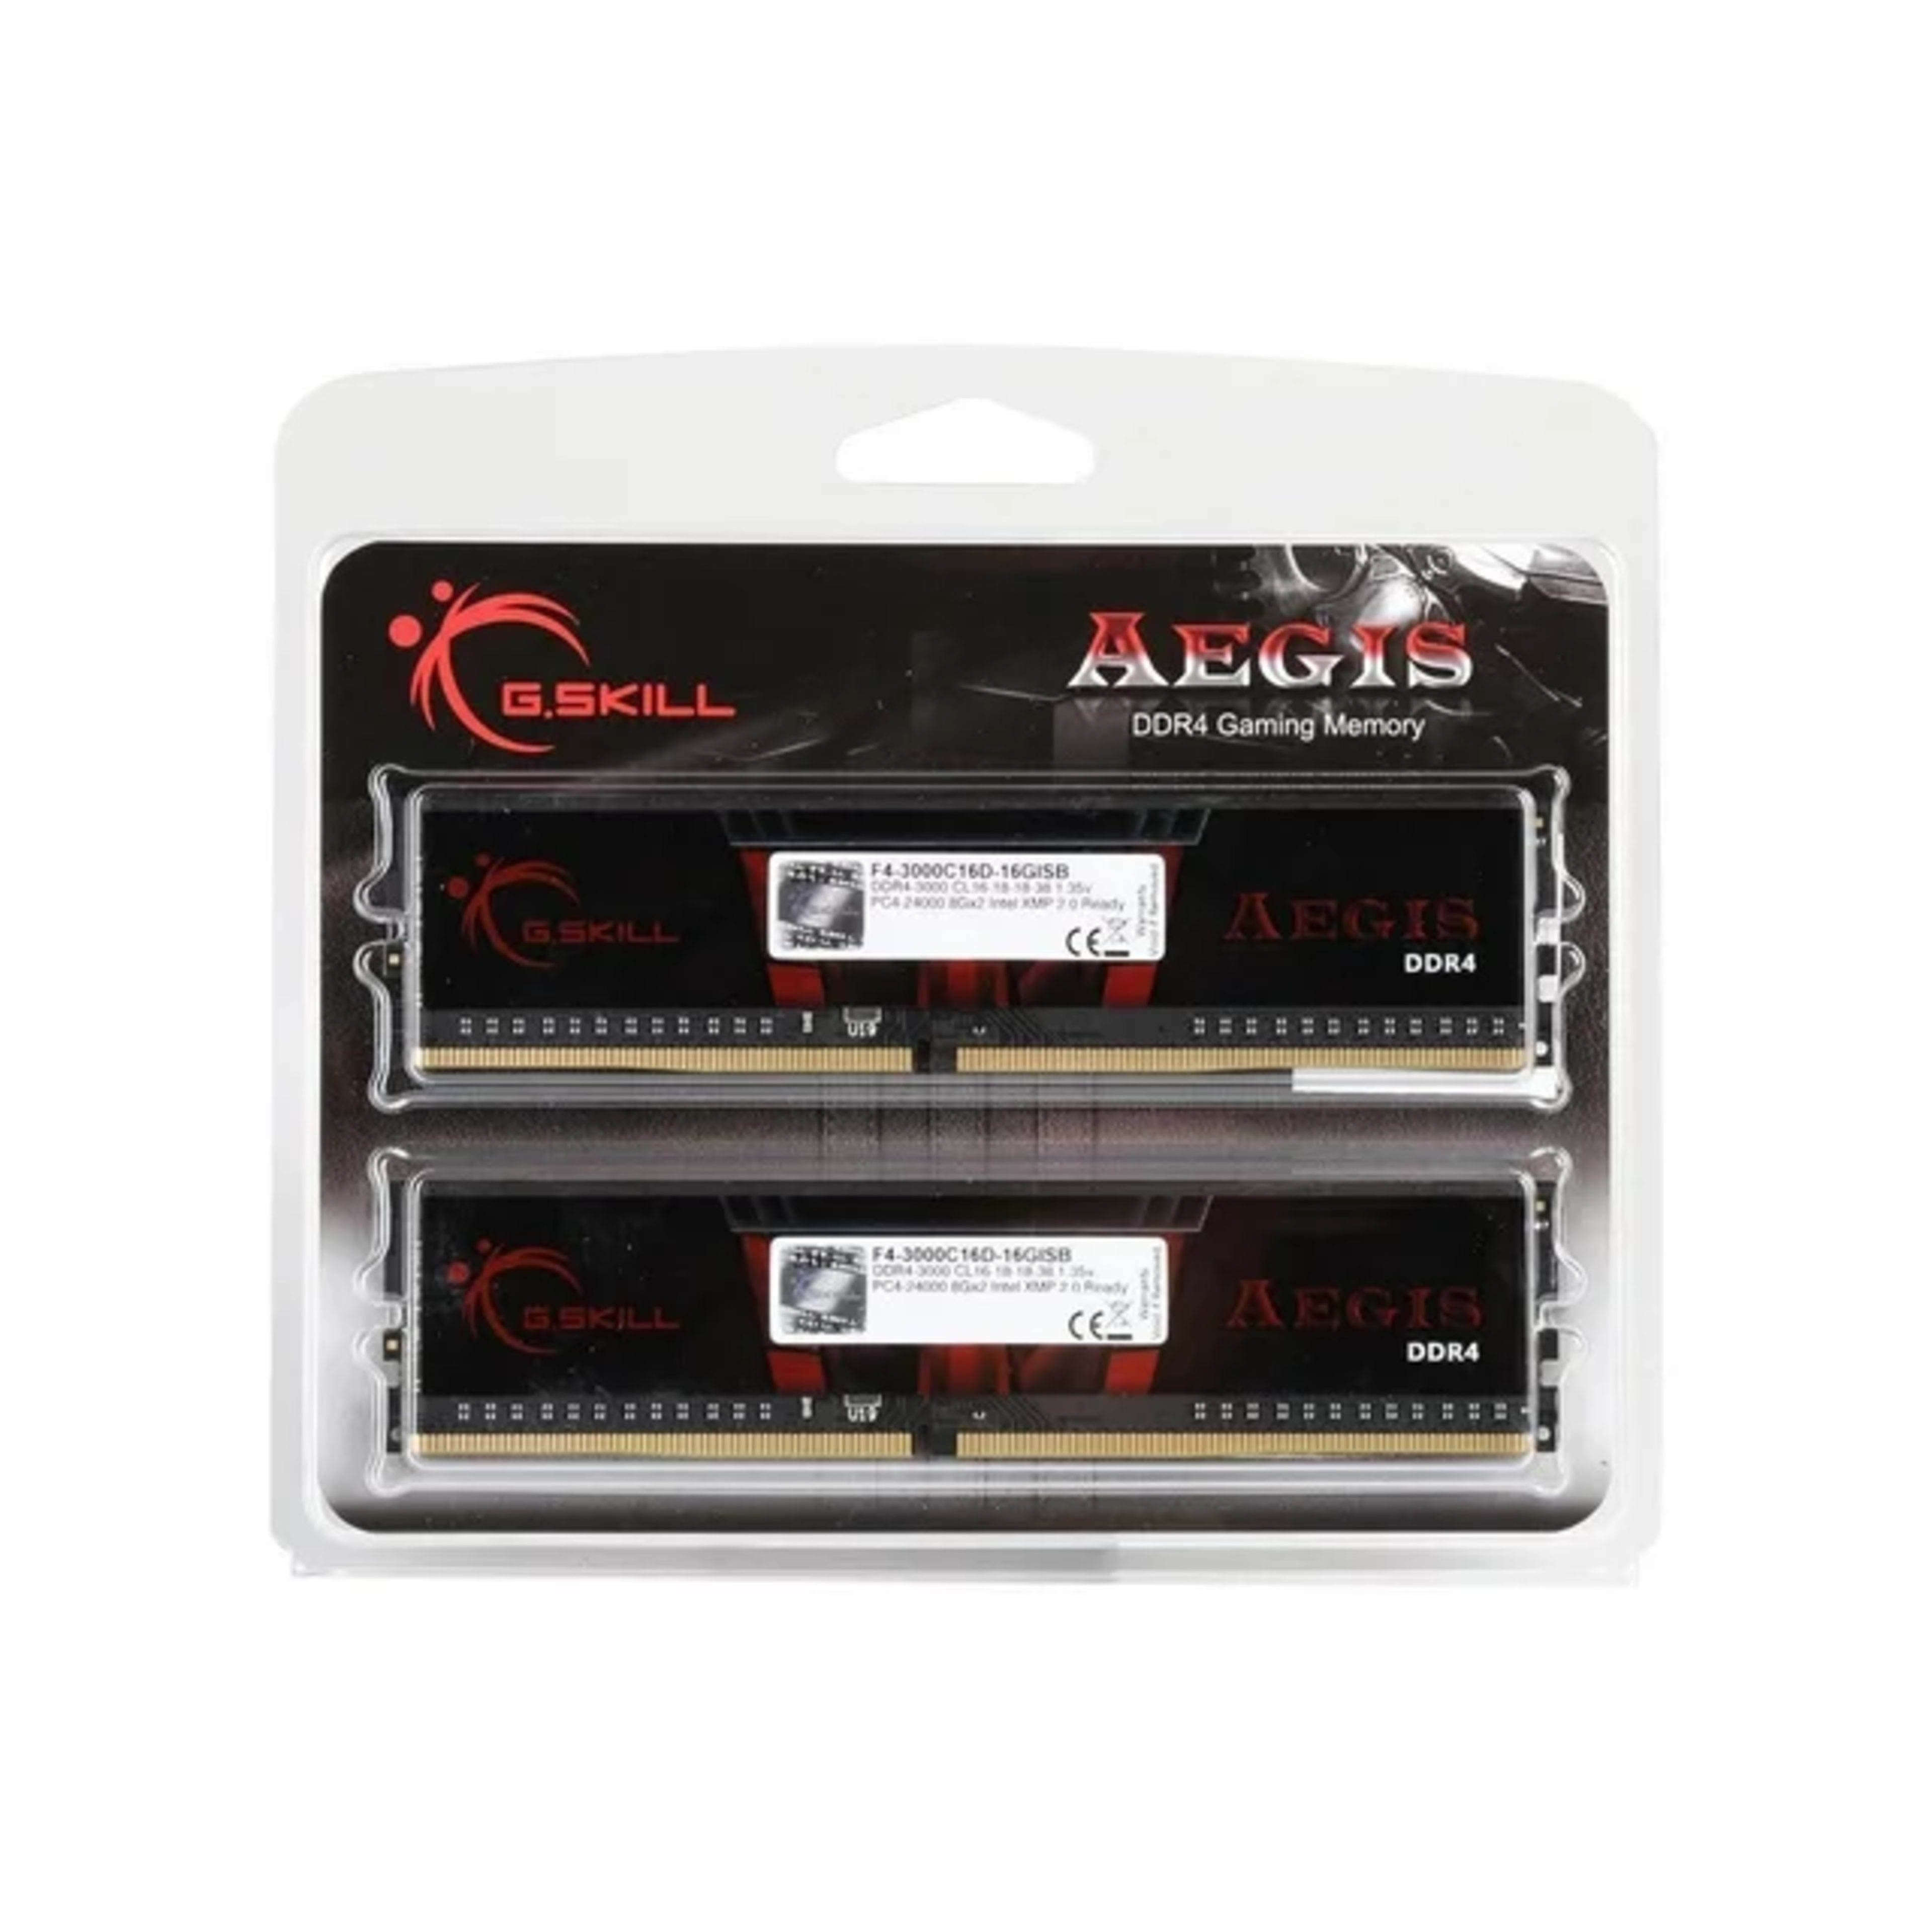 NIB G.Skill Aegis DDR4-3000 8GBx2